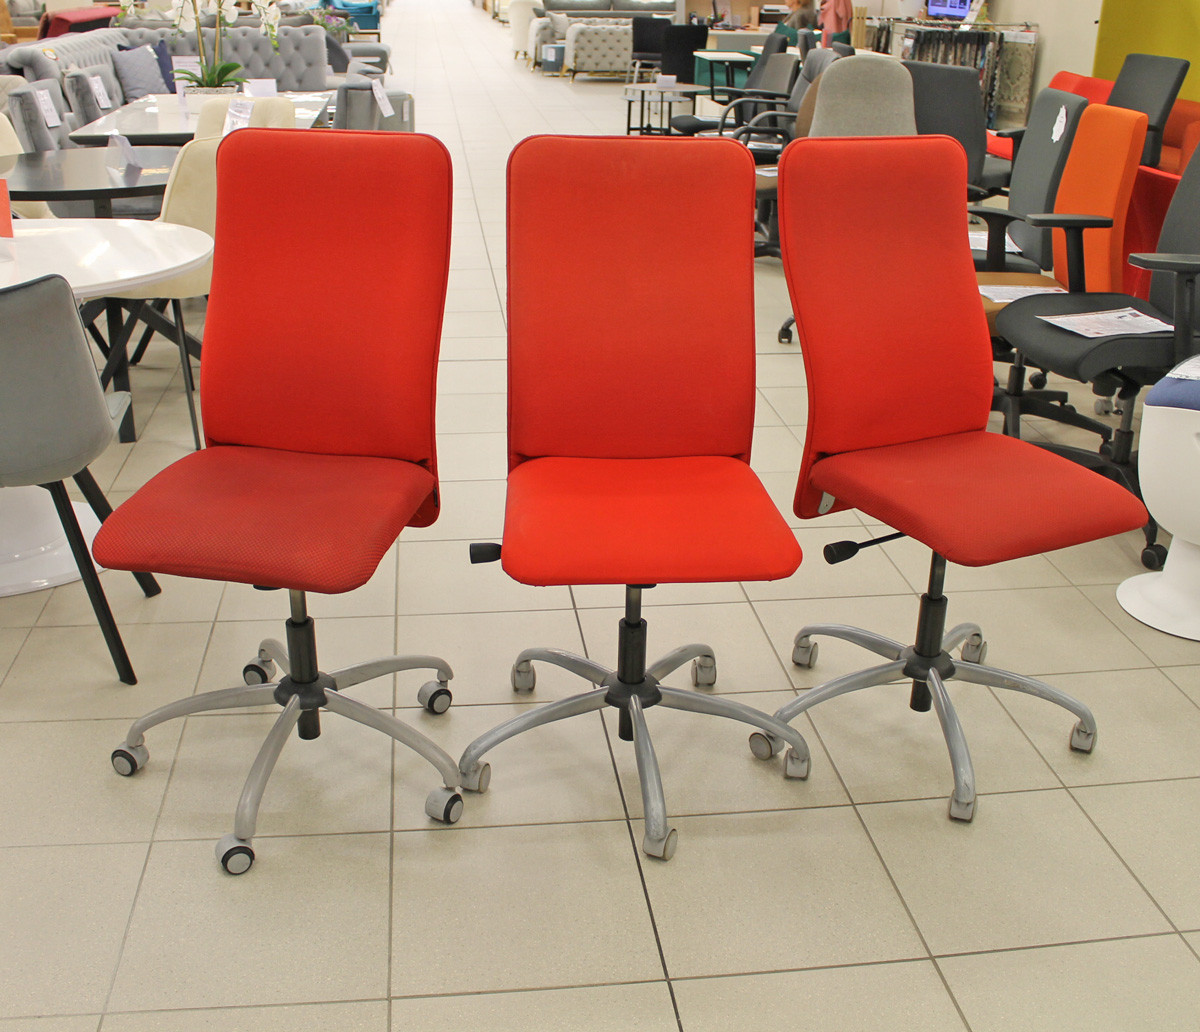 Naudota biuro kėdė, ND-kd-248-5-W VERSO Narbutas, raudona. (maksimali apkrova 100 kg)